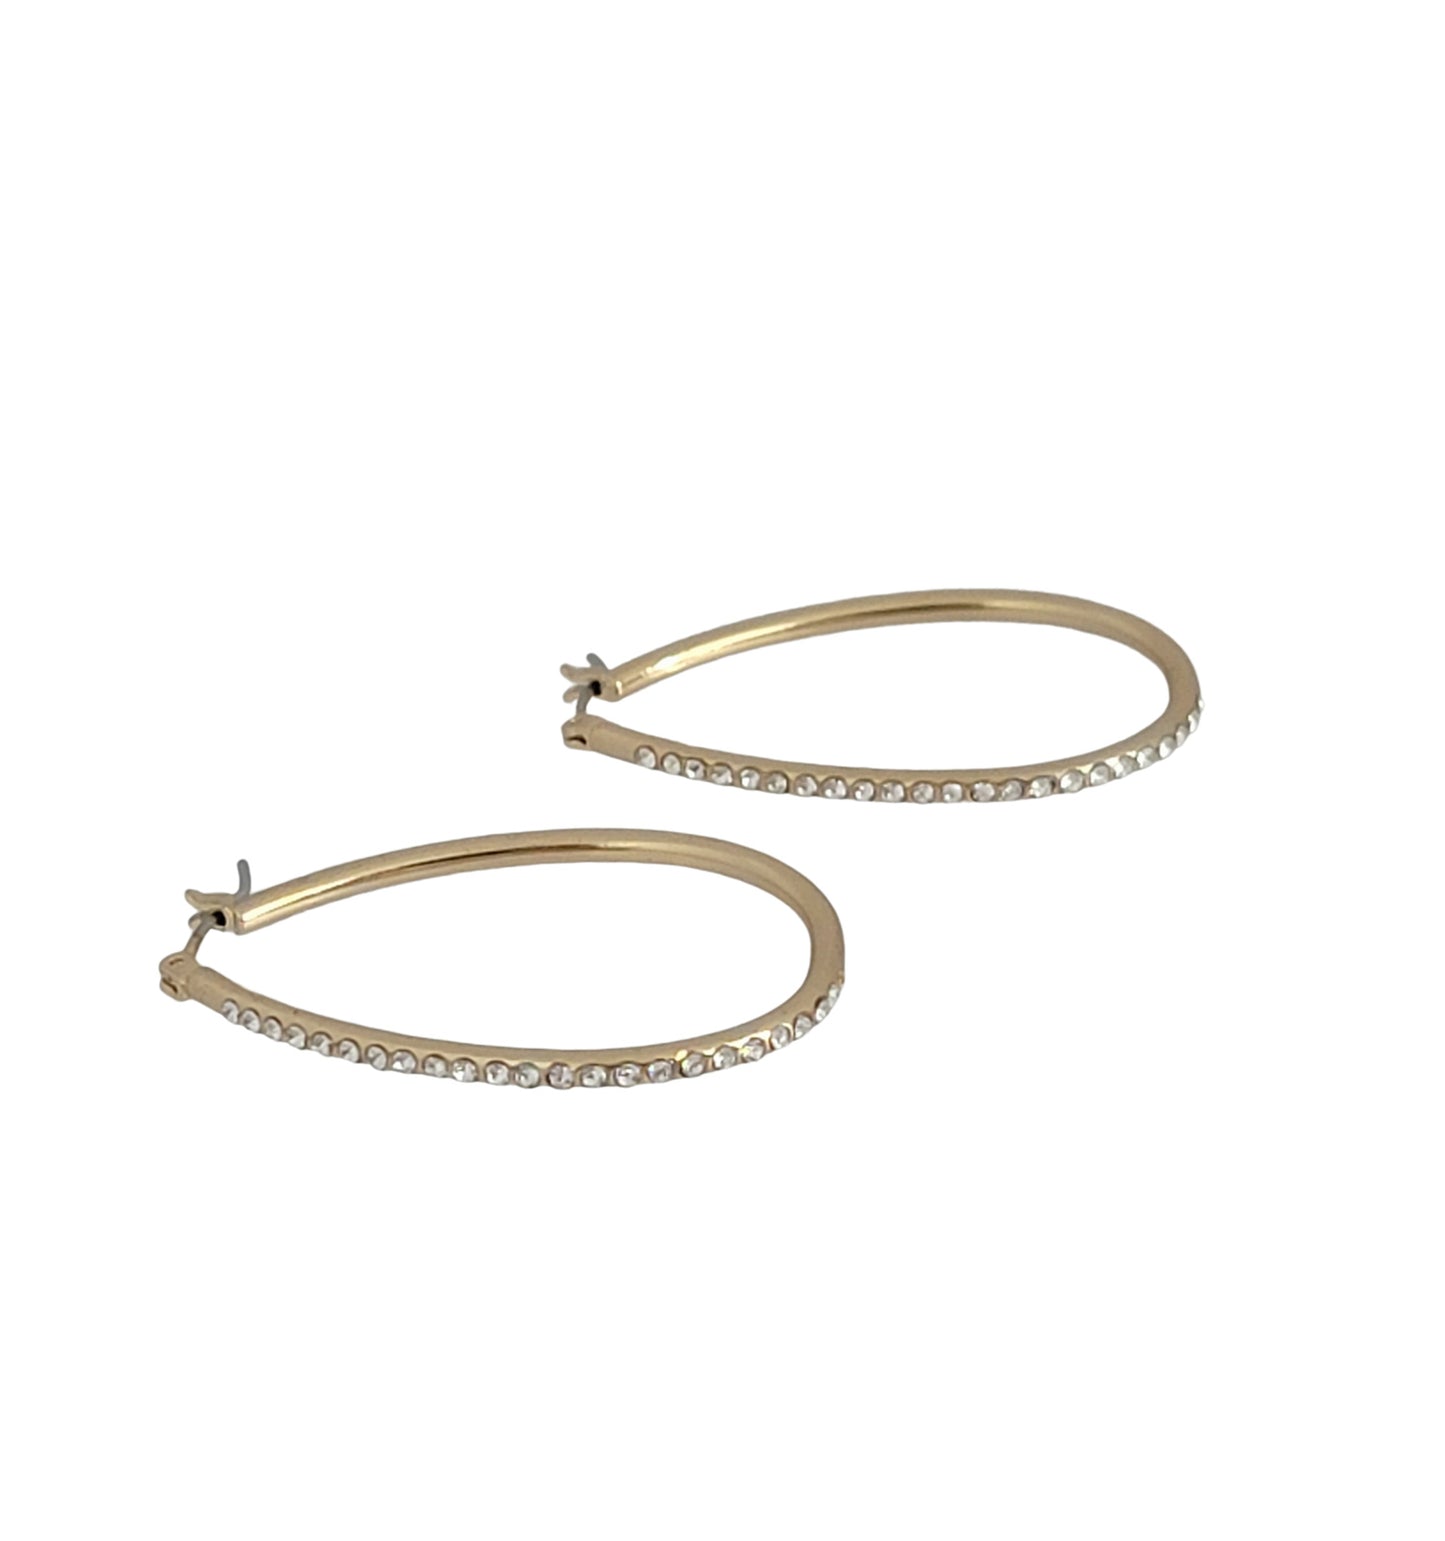 Ladies Gold Tone Loop Hoop Crystal Studded Pierced Earrings - Gift Boxed